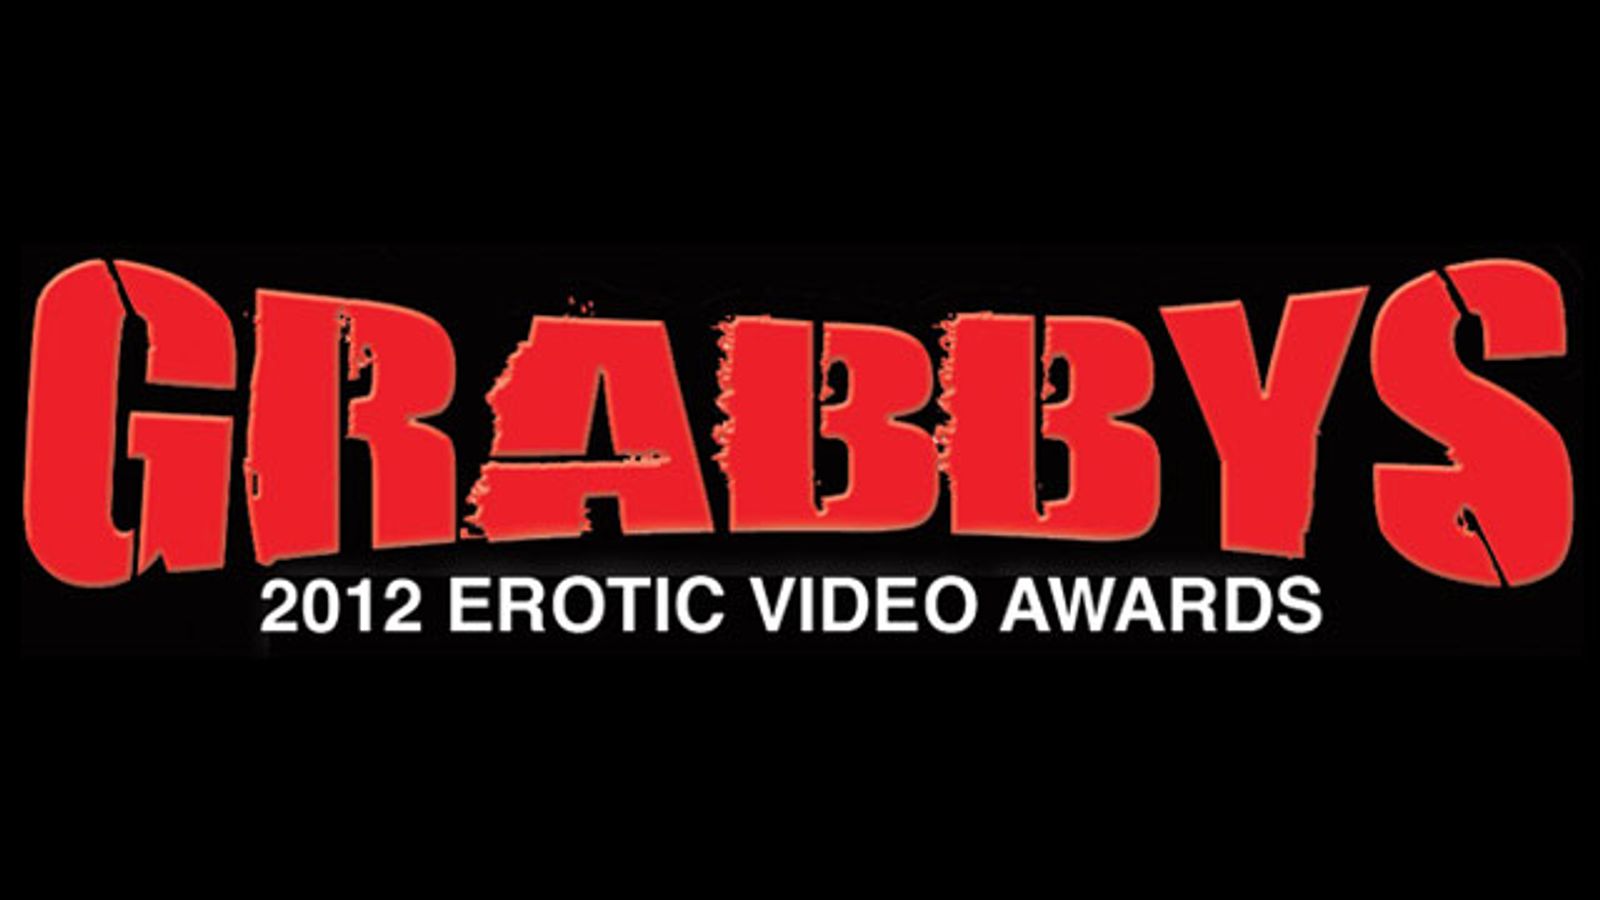 Cameraboys.com to Sponsor 2012 Grabbys Awards